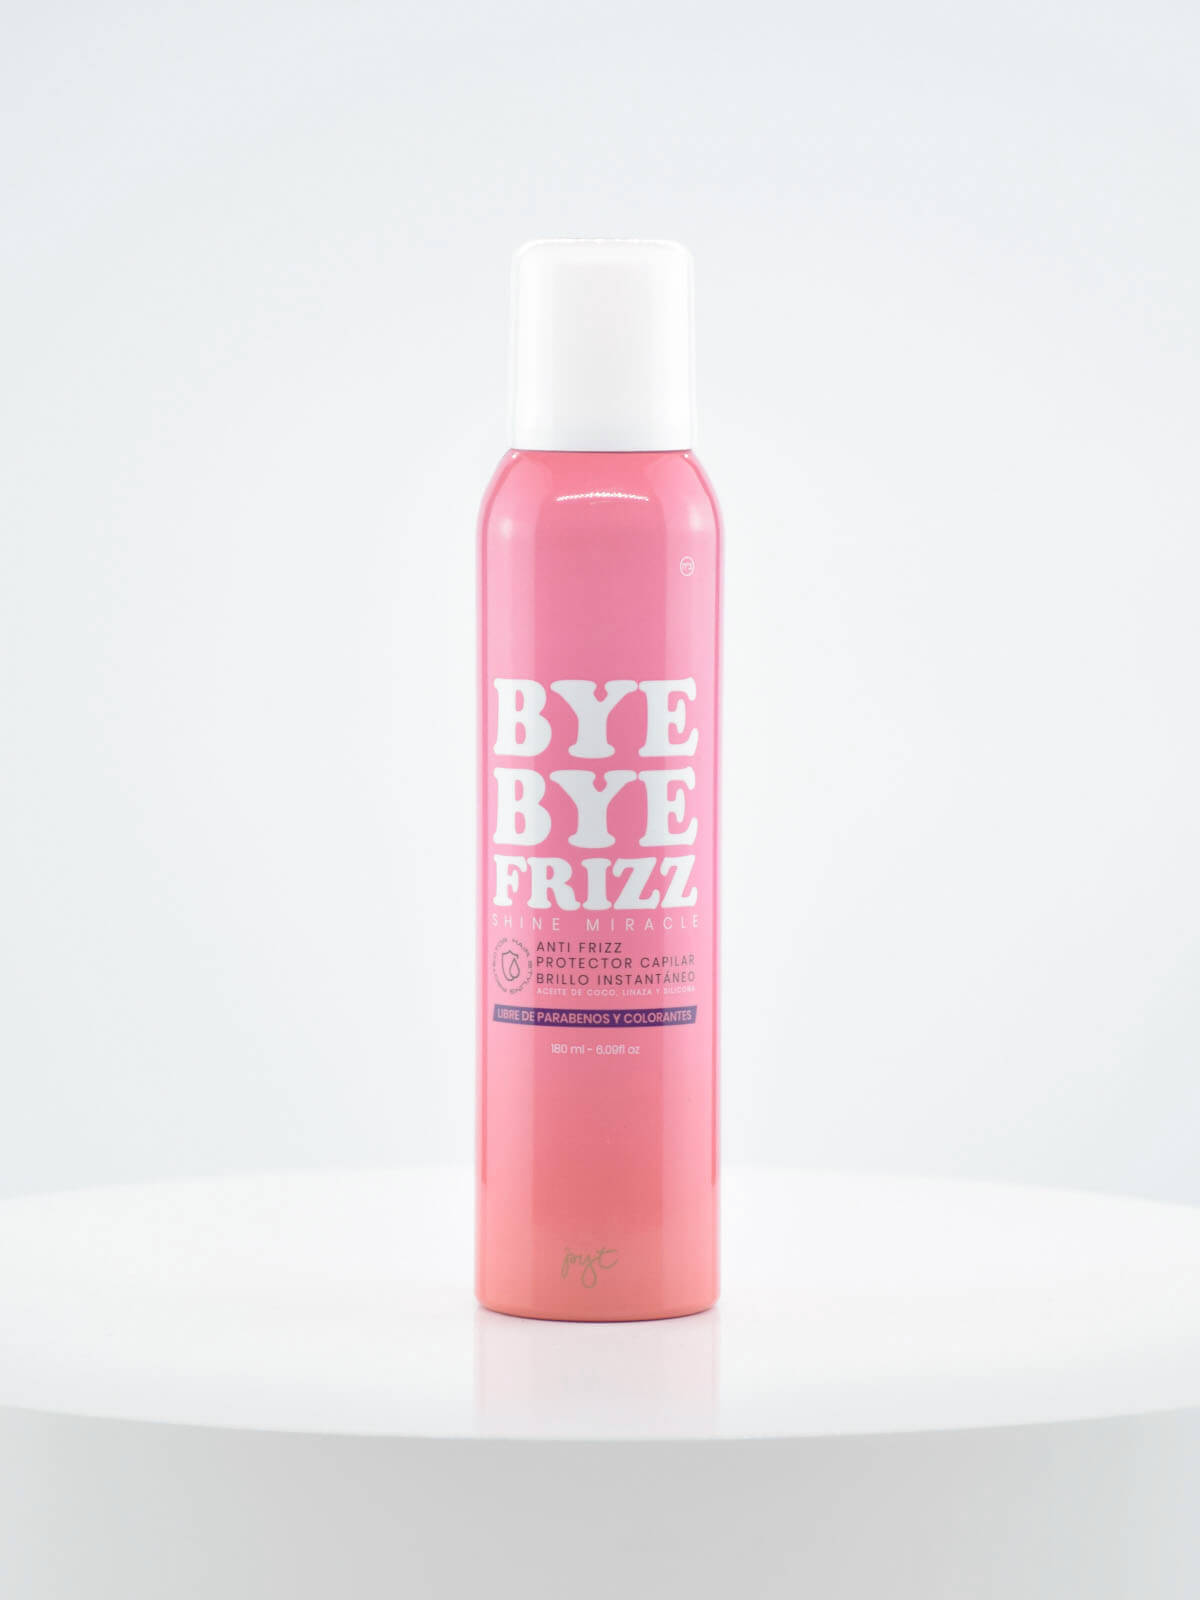 Bye Bye Frizz - Anti Frizz PYT